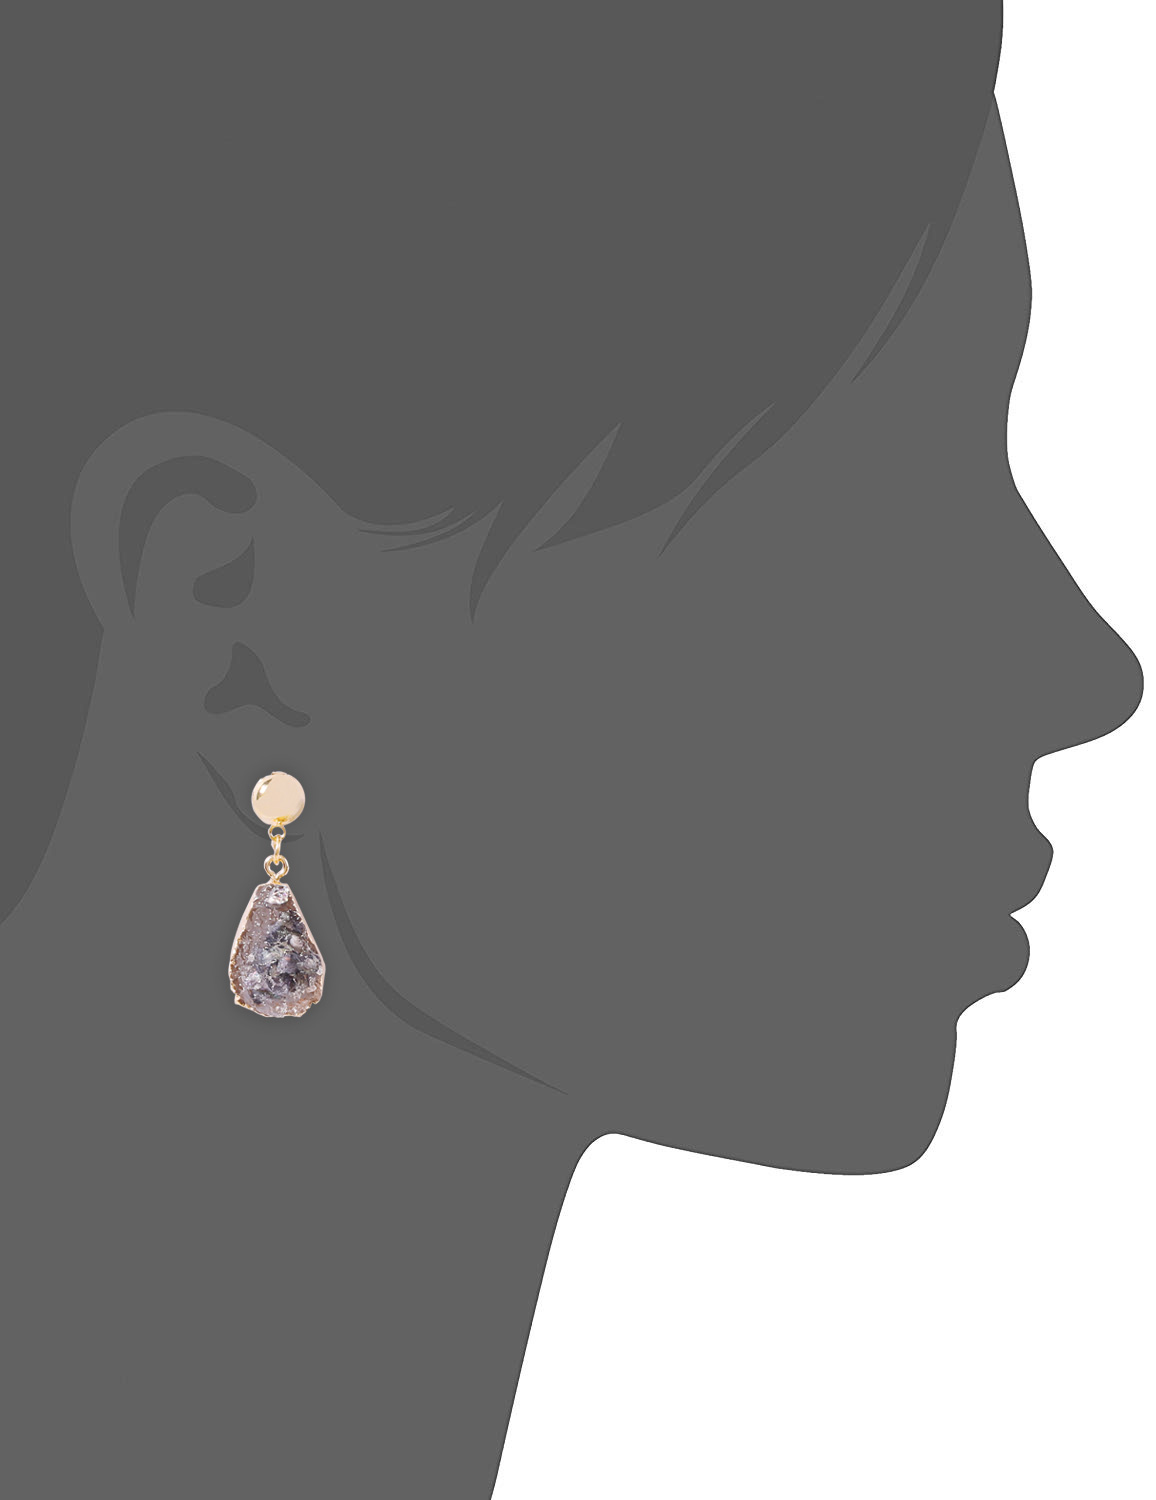 Fashion Pink Alloy Resin Geometric Earrings,Drop Earrings